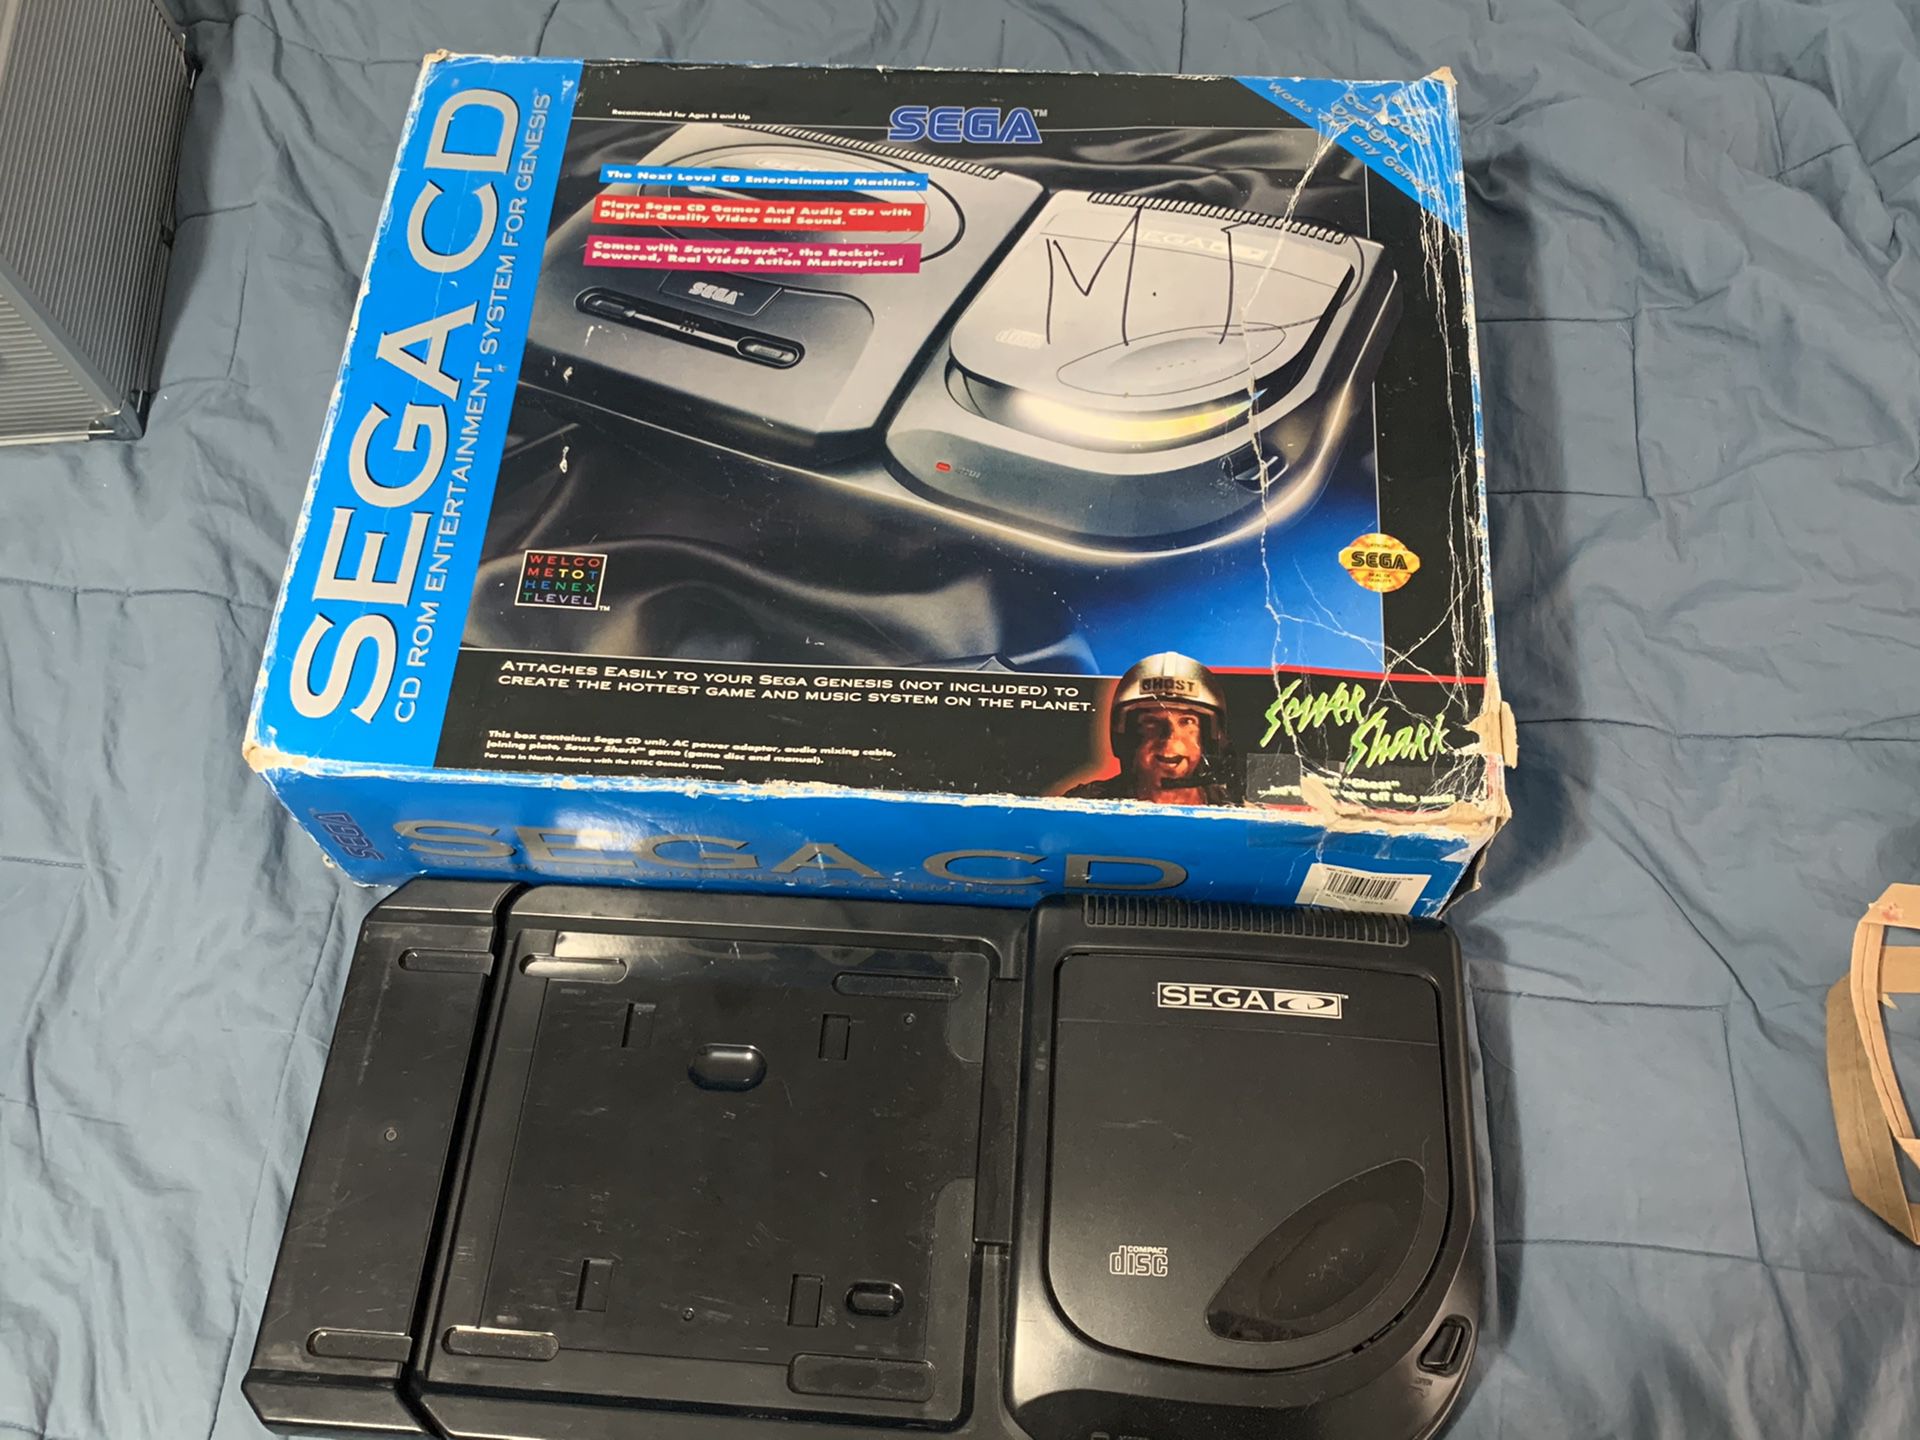 Sega cd model 2